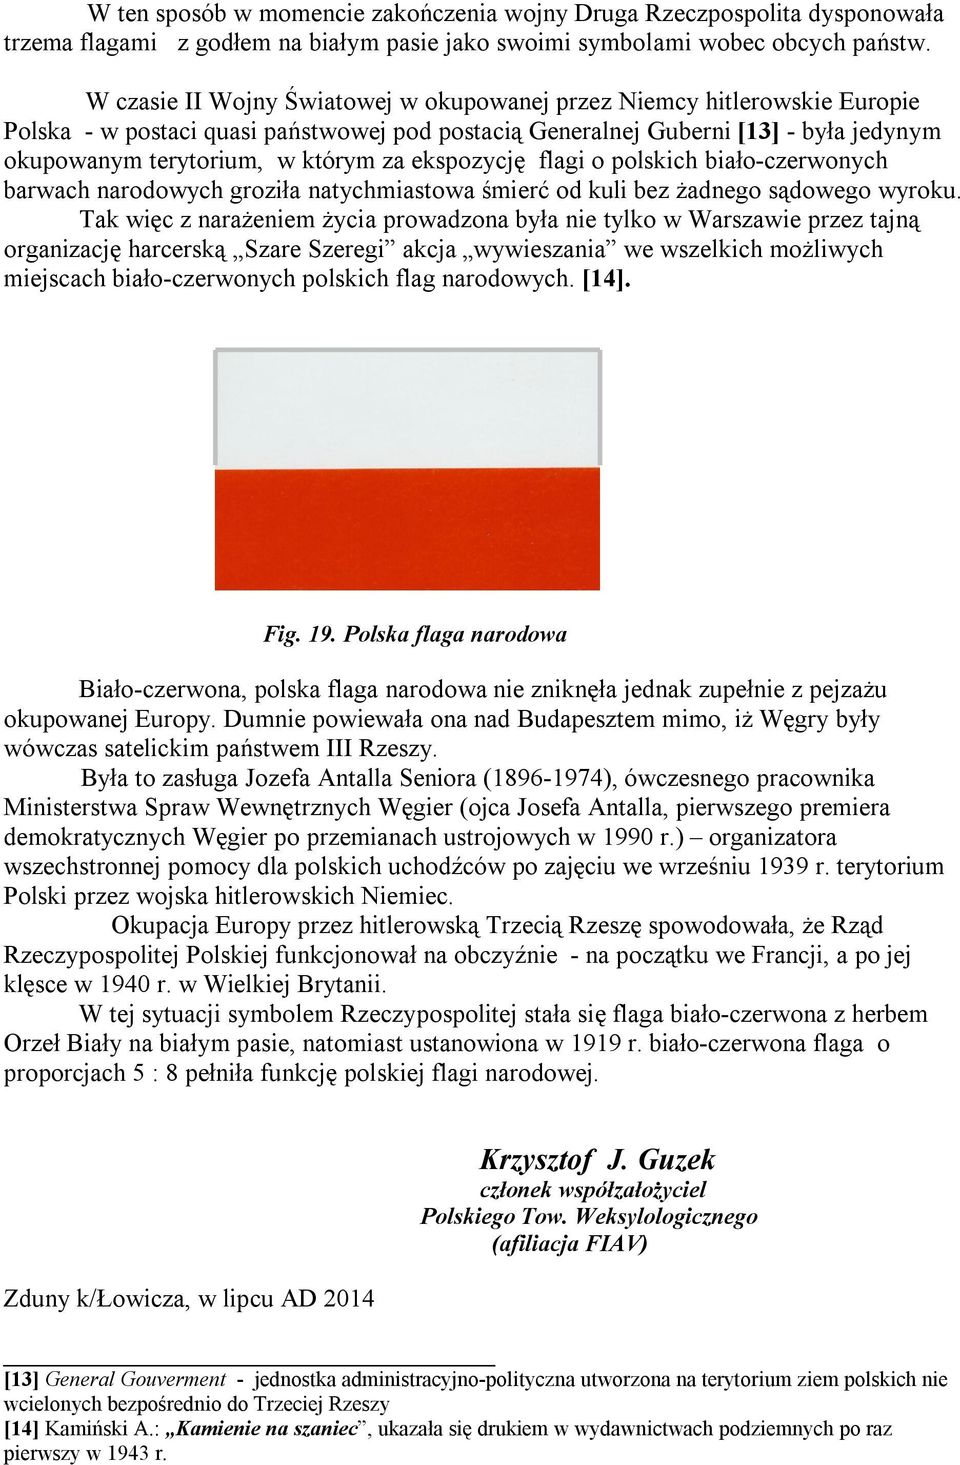 ekspozycję flagi o polskich biało-czerwonych barwach narodowych groziła natychmiastowa śmierć od kuli bez żadnego sądowego wyroku.